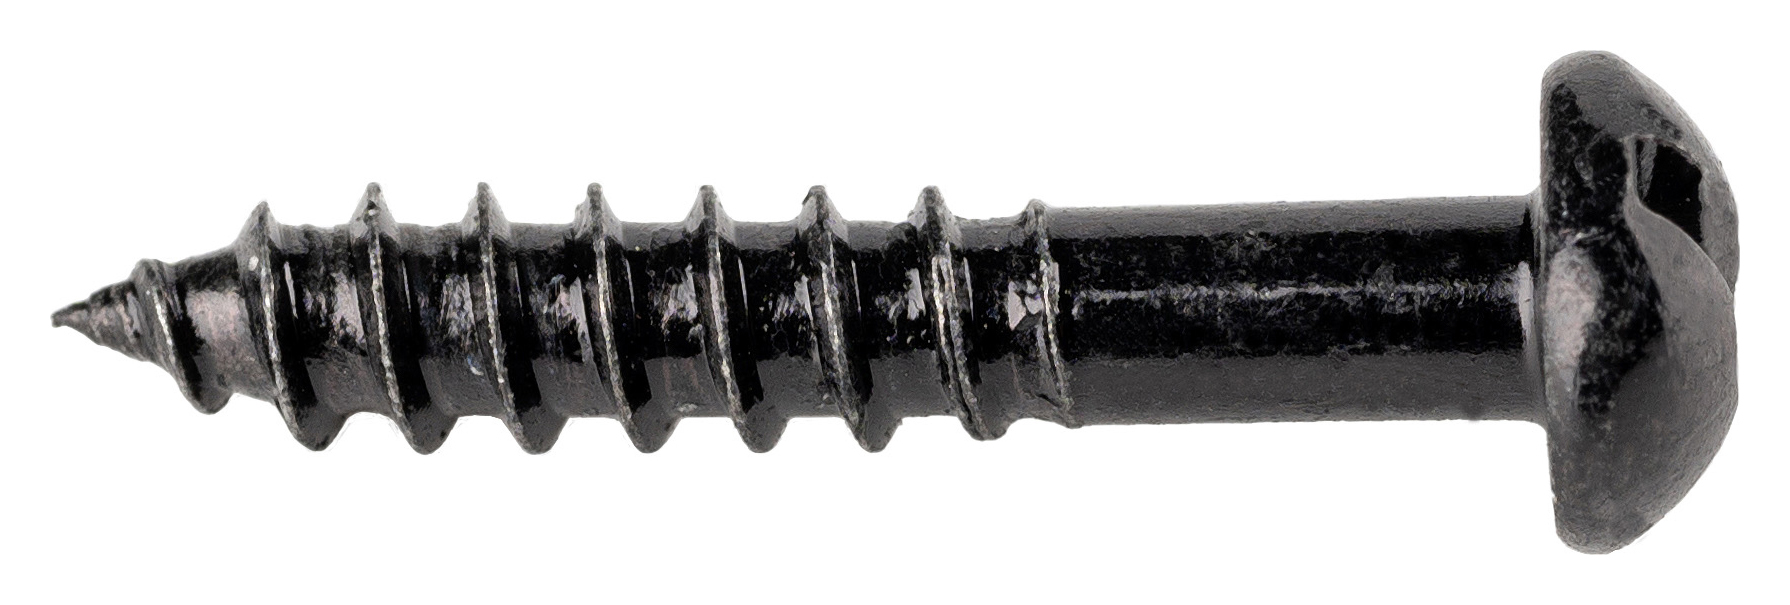 Wickes Black Japanned Wood Screws - 3.5 x 20mm - Pack of 25